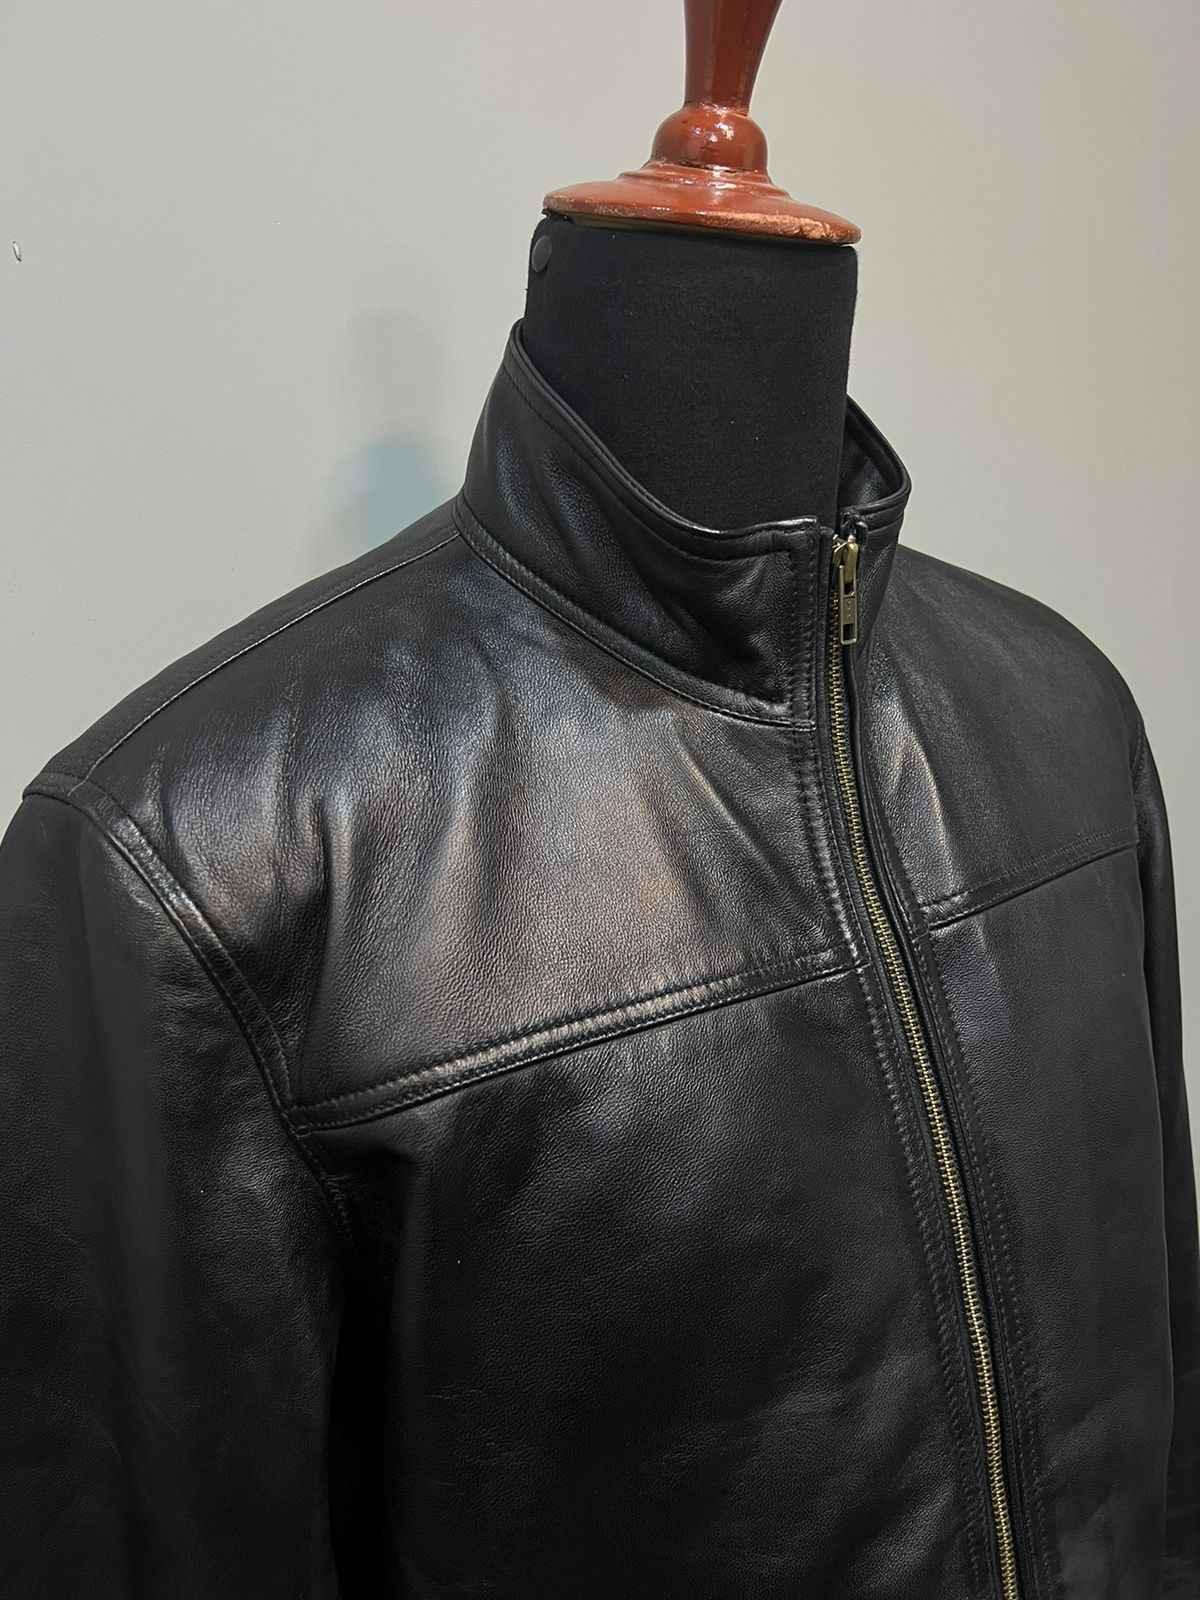 Mens Black Leather Blazer Jacket Delivered-1